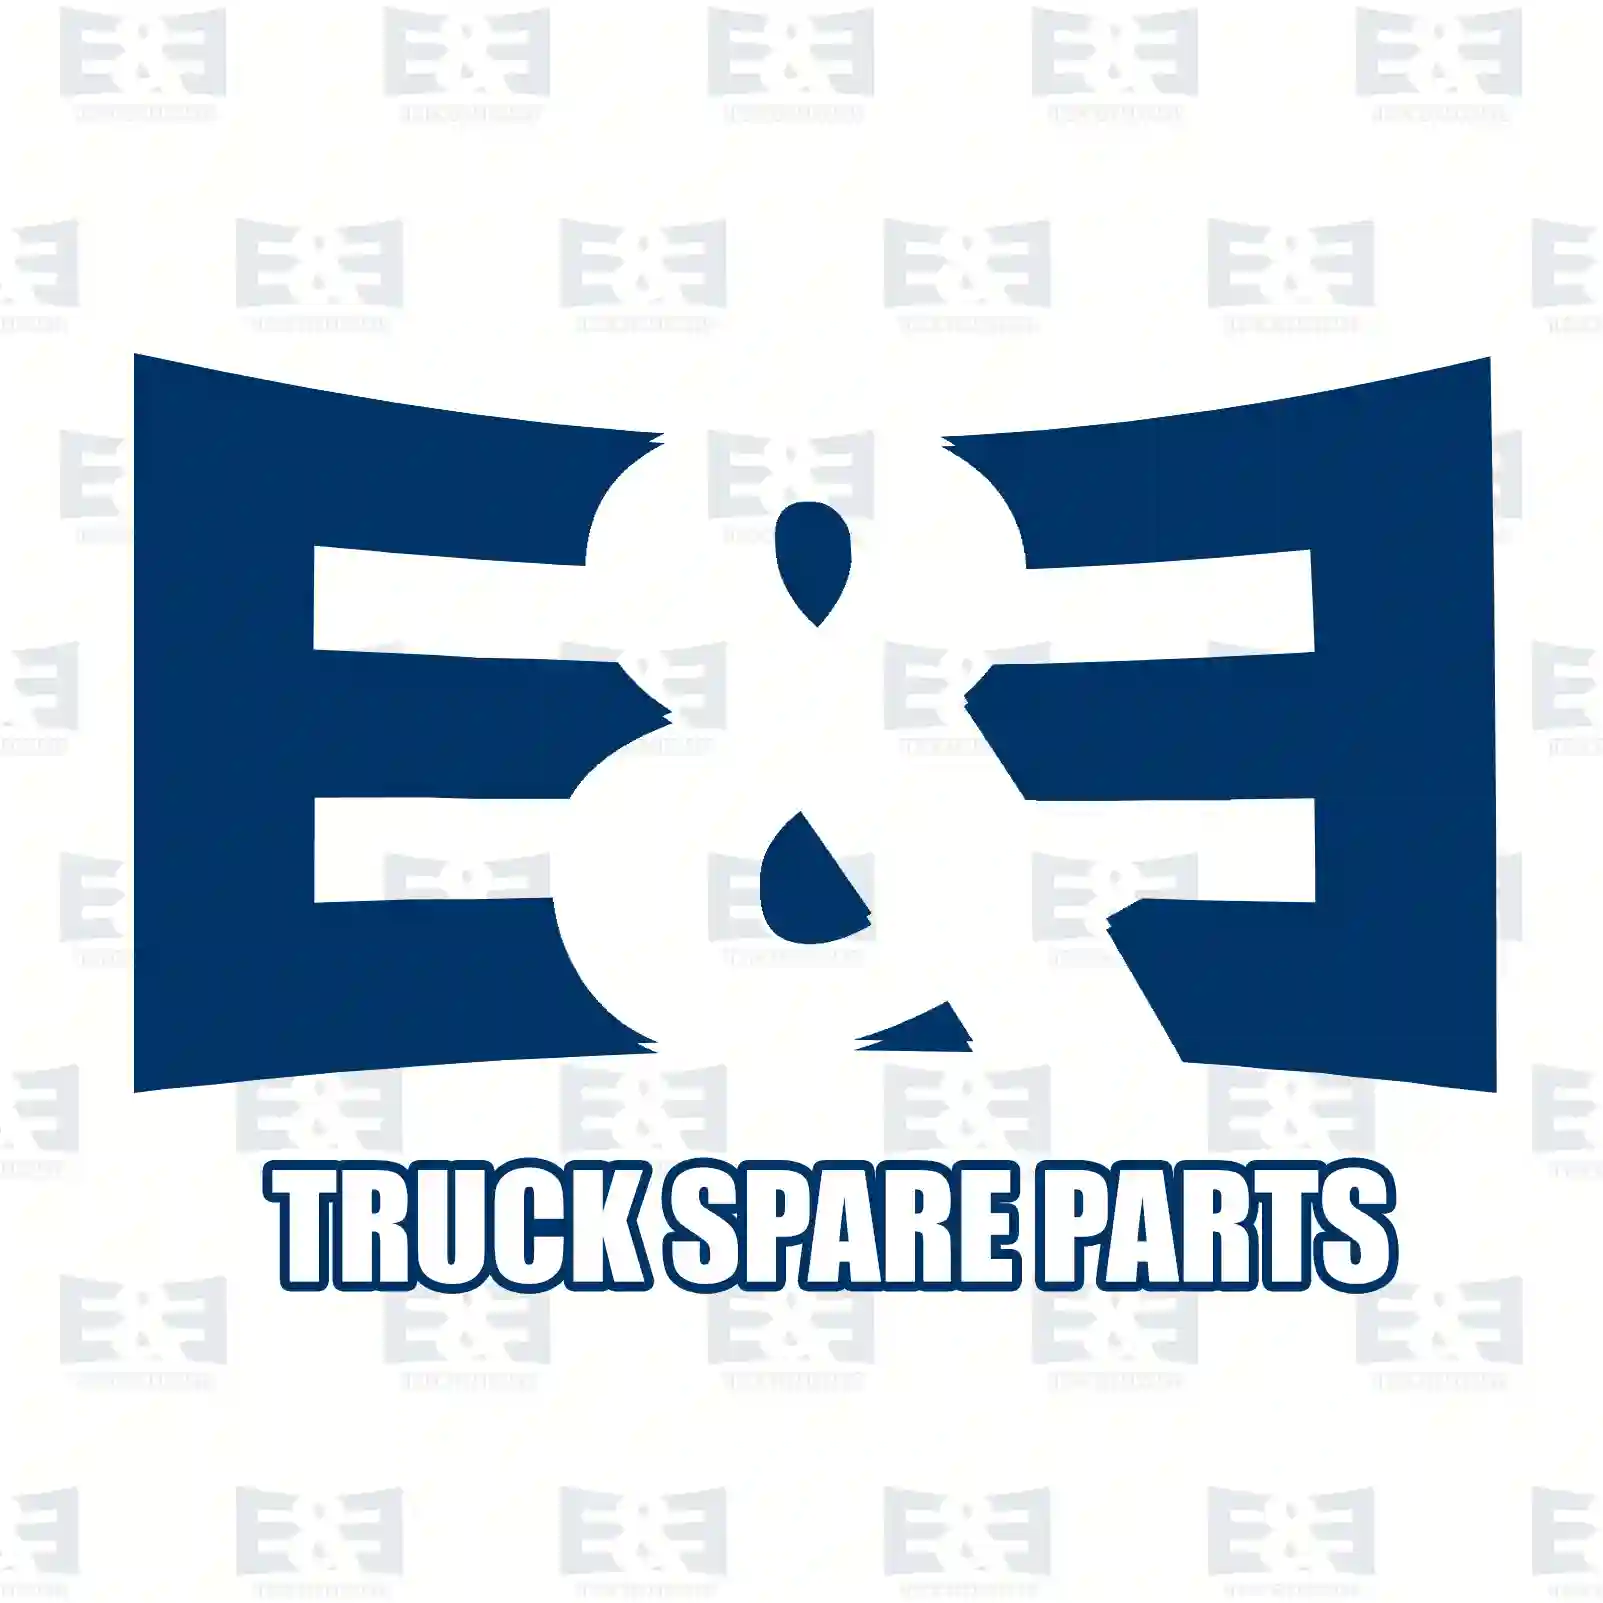 Warning label, 2E2285148, , , ||  2E2285148 E&E Truck Spare Parts | Truck Spare Parts, Auotomotive Spare Parts Warning label, 2E2285148, , , ||  2E2285148 E&E Truck Spare Parts | Truck Spare Parts, Auotomotive Spare Parts